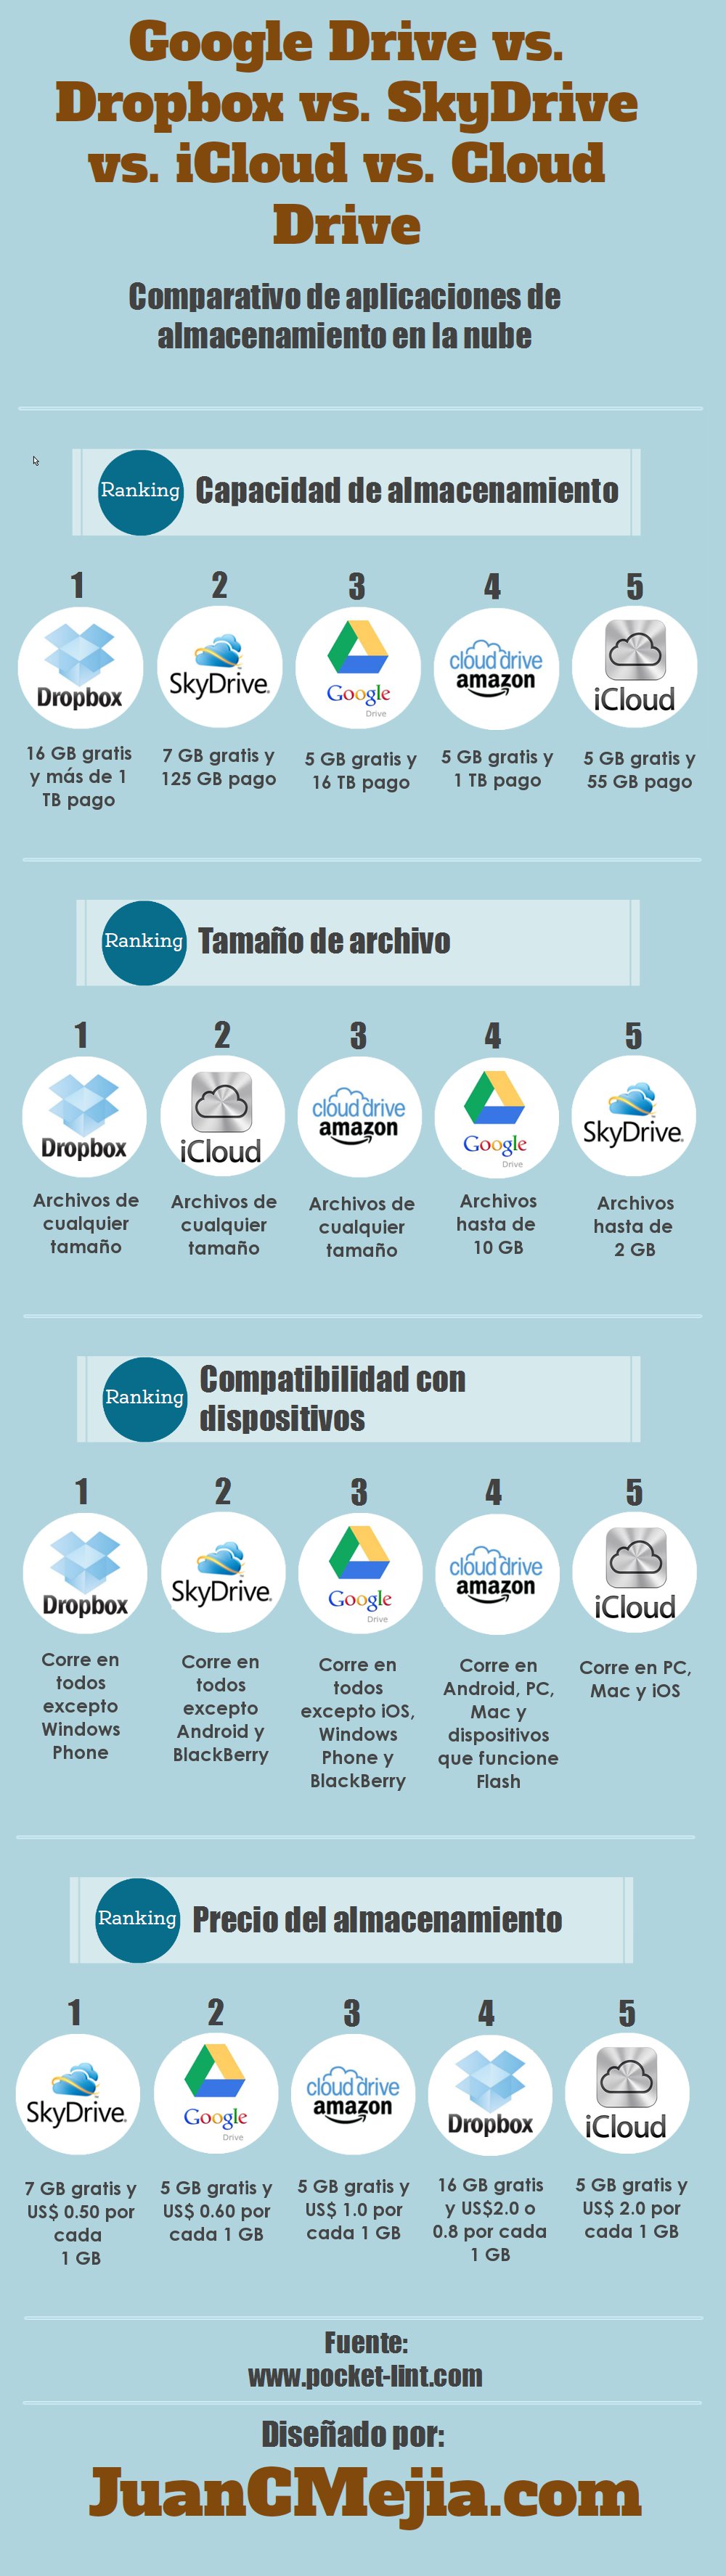 Infografía con comparativo de sistemas de almacenamiento en la nube: de Google Drive vs Dropbox vs Microsoft SkyDrive vs Apple iCloud vs Amazon Cloud Drive